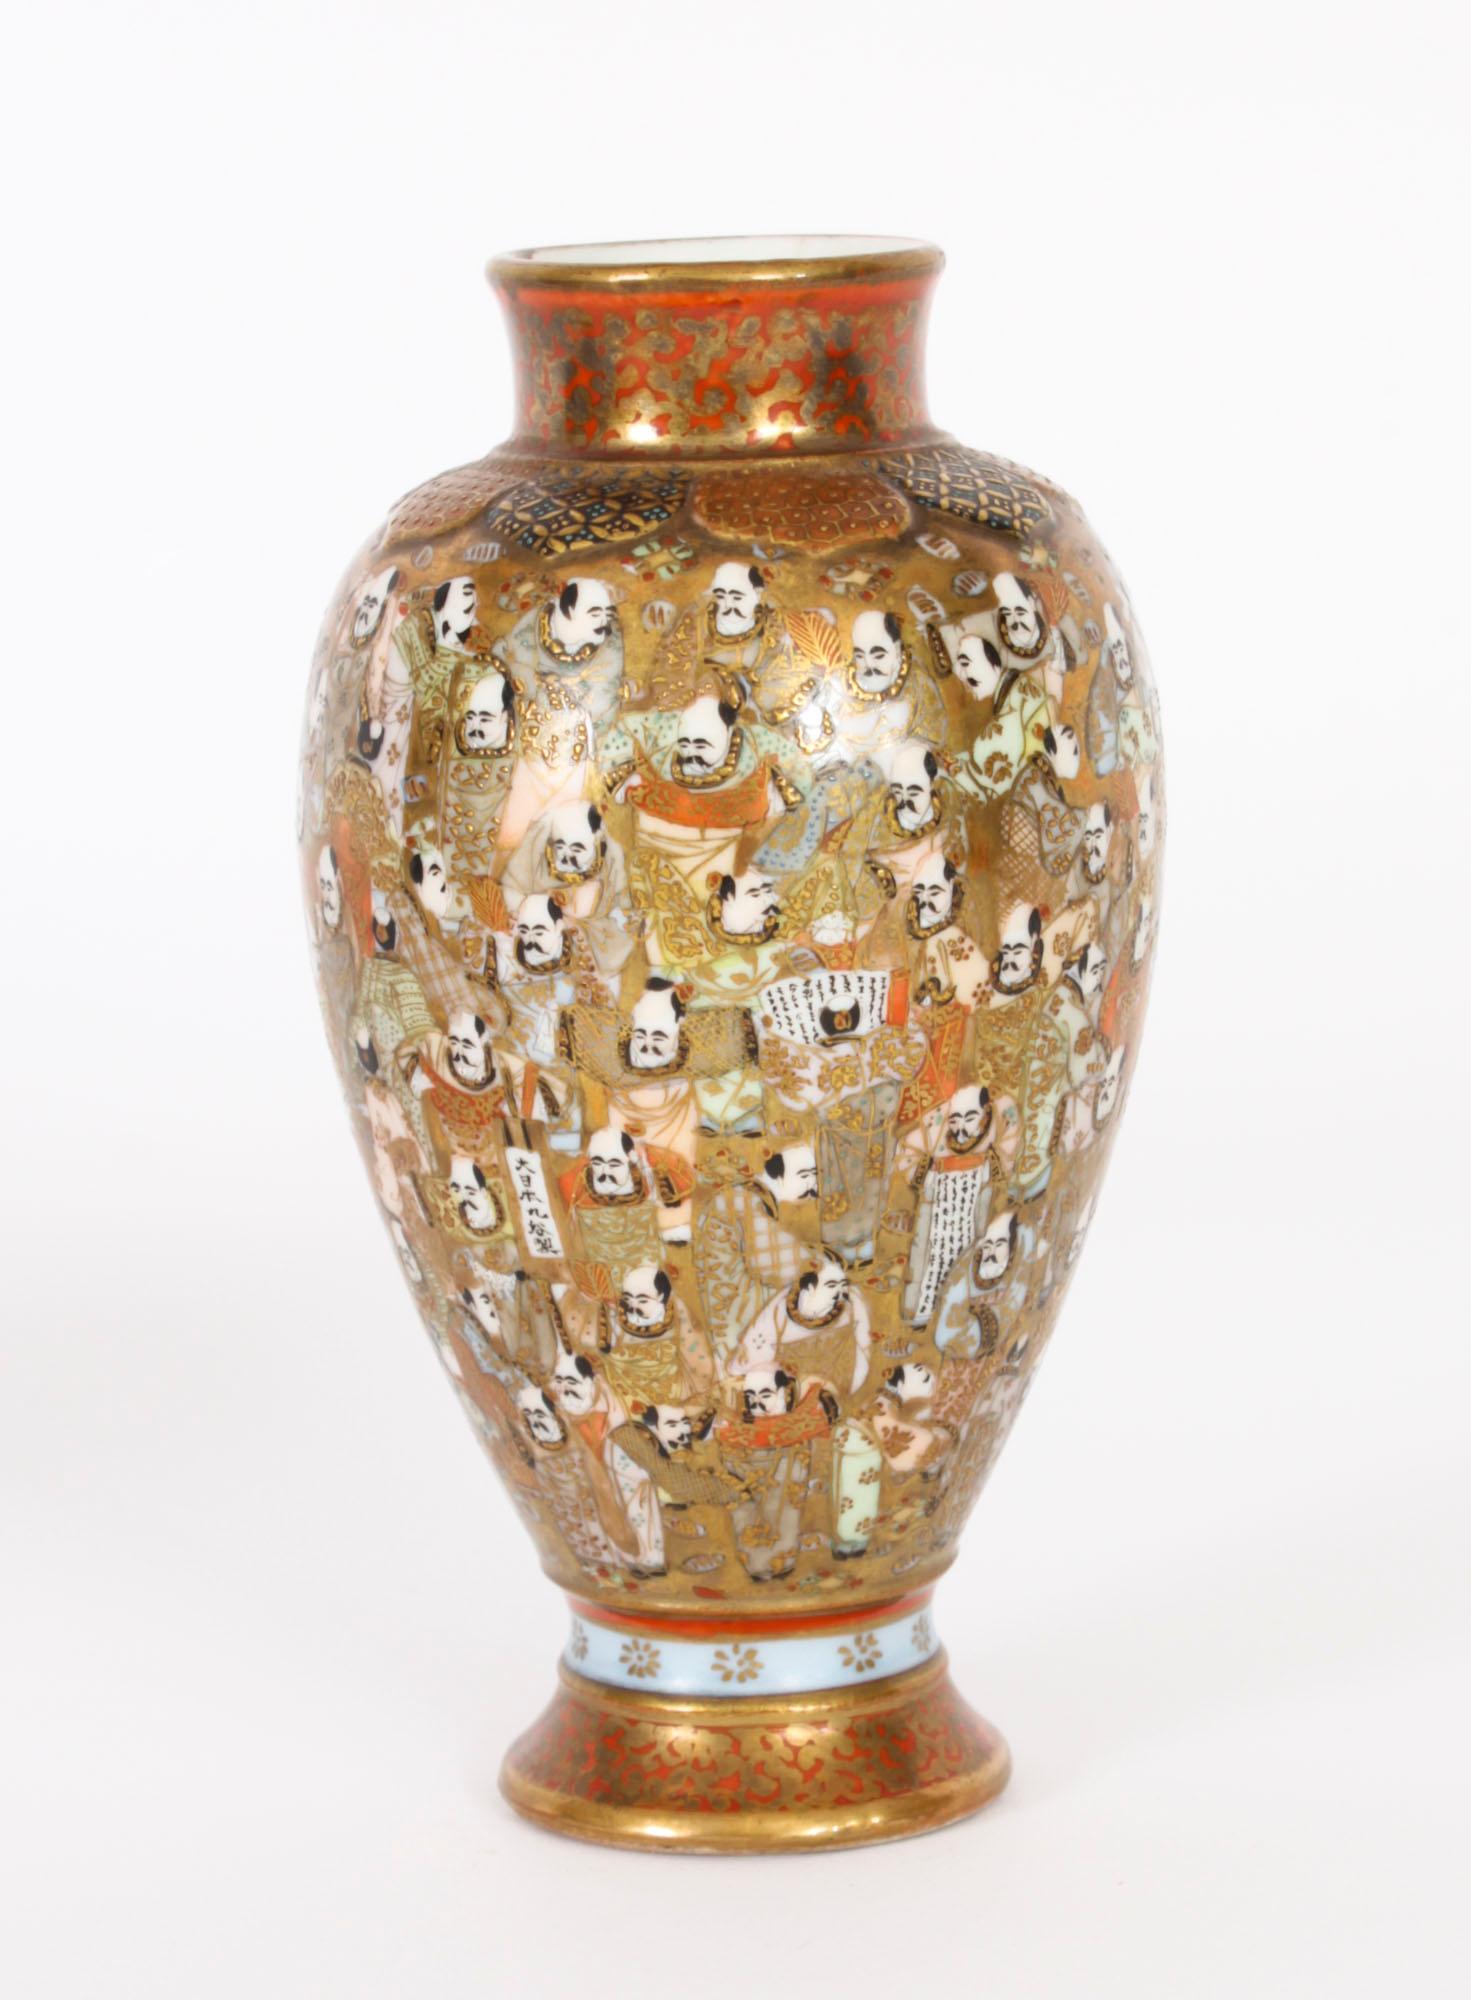 Une belle paire de mini-vases Satsuma signés de la période Meiiji, datant de la fin du 19e siècle.

Chaque vase a un corps de forme ovoïde, peint sur toute la surface en émaux polychromes et en or avec des images des 